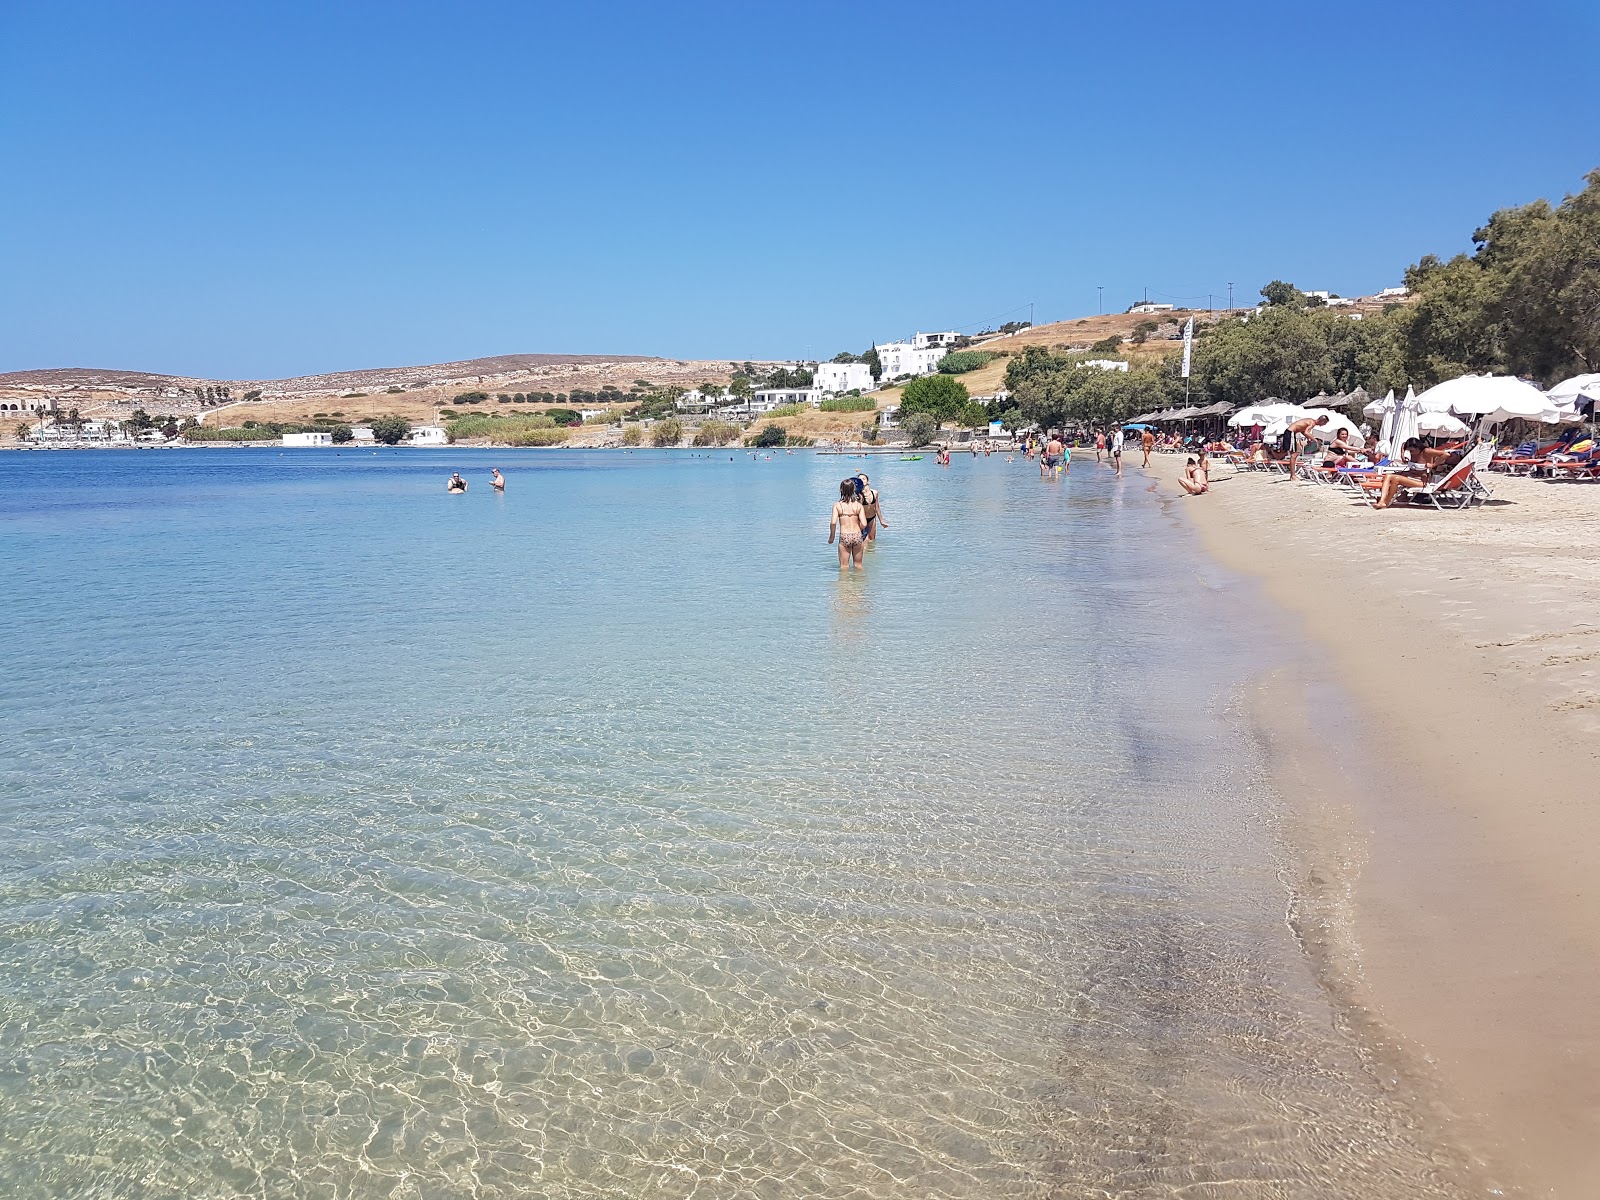 Livadia beach'in fotoğrafı parlak kum yüzey ile